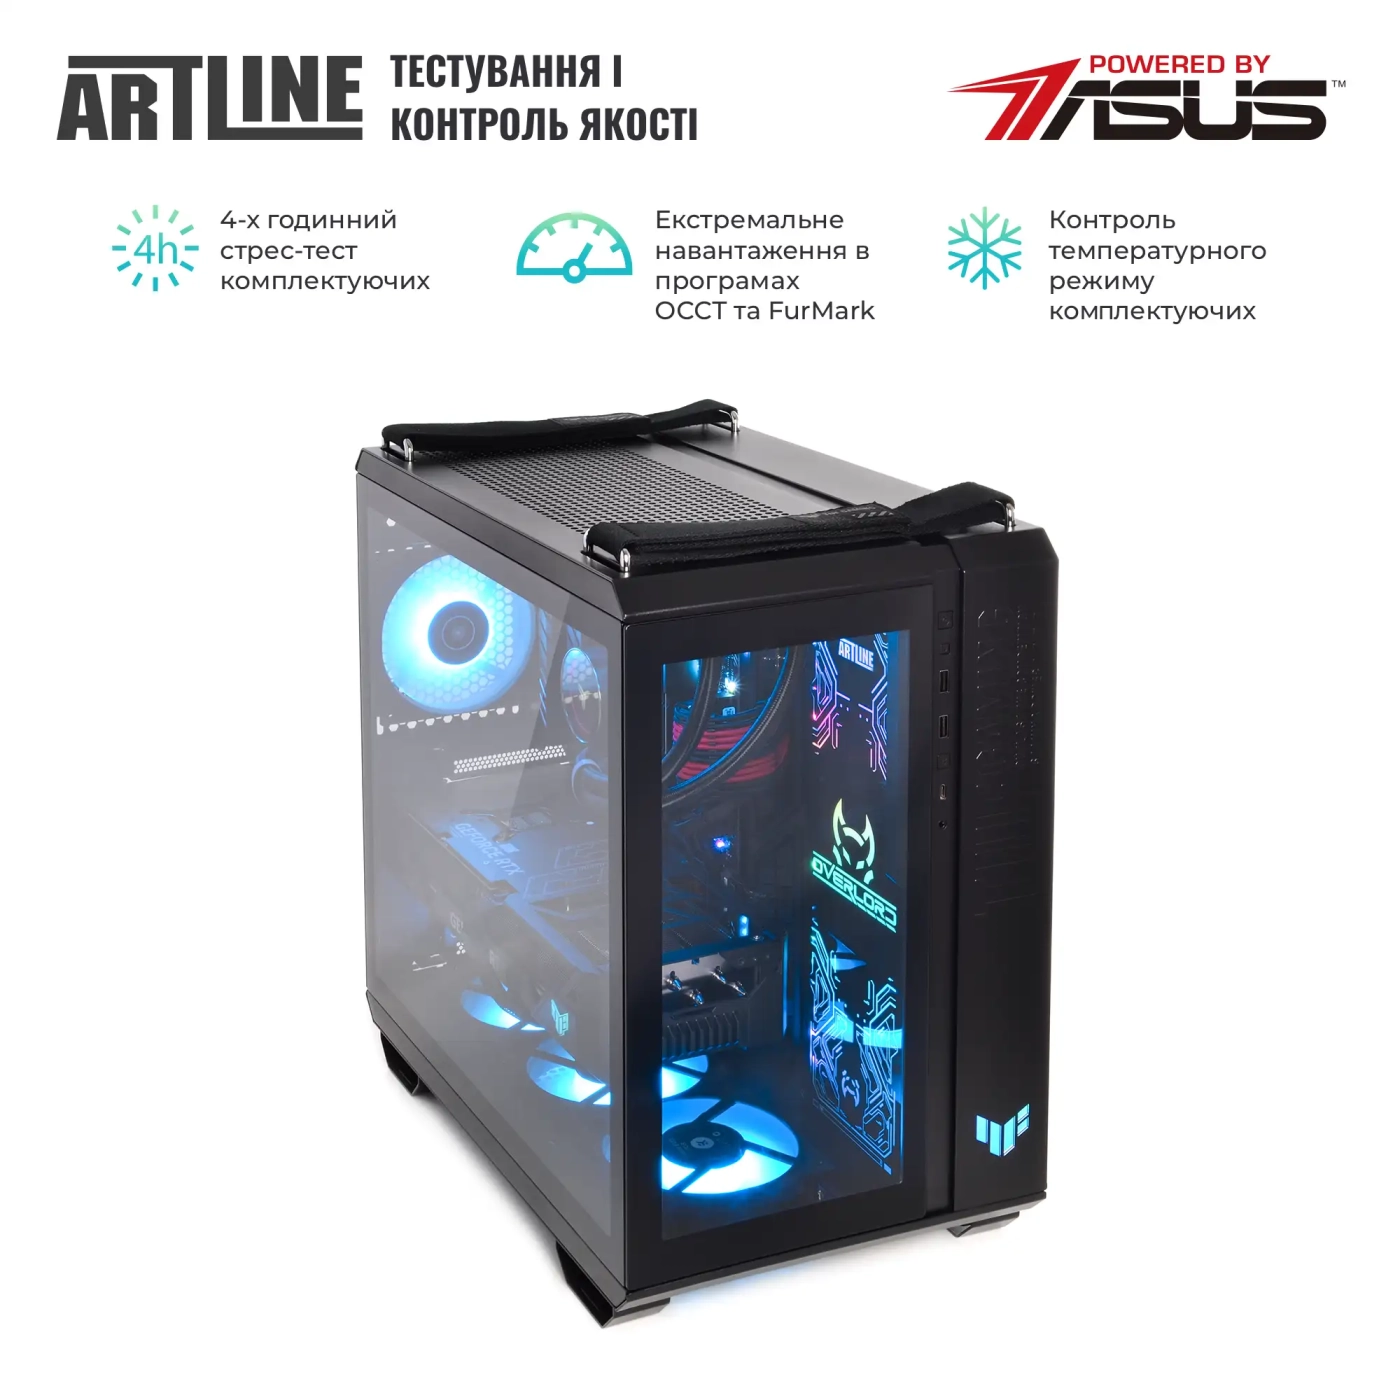 Купить Компьютер ARTLINE Gaming GT502v22 - фото 9